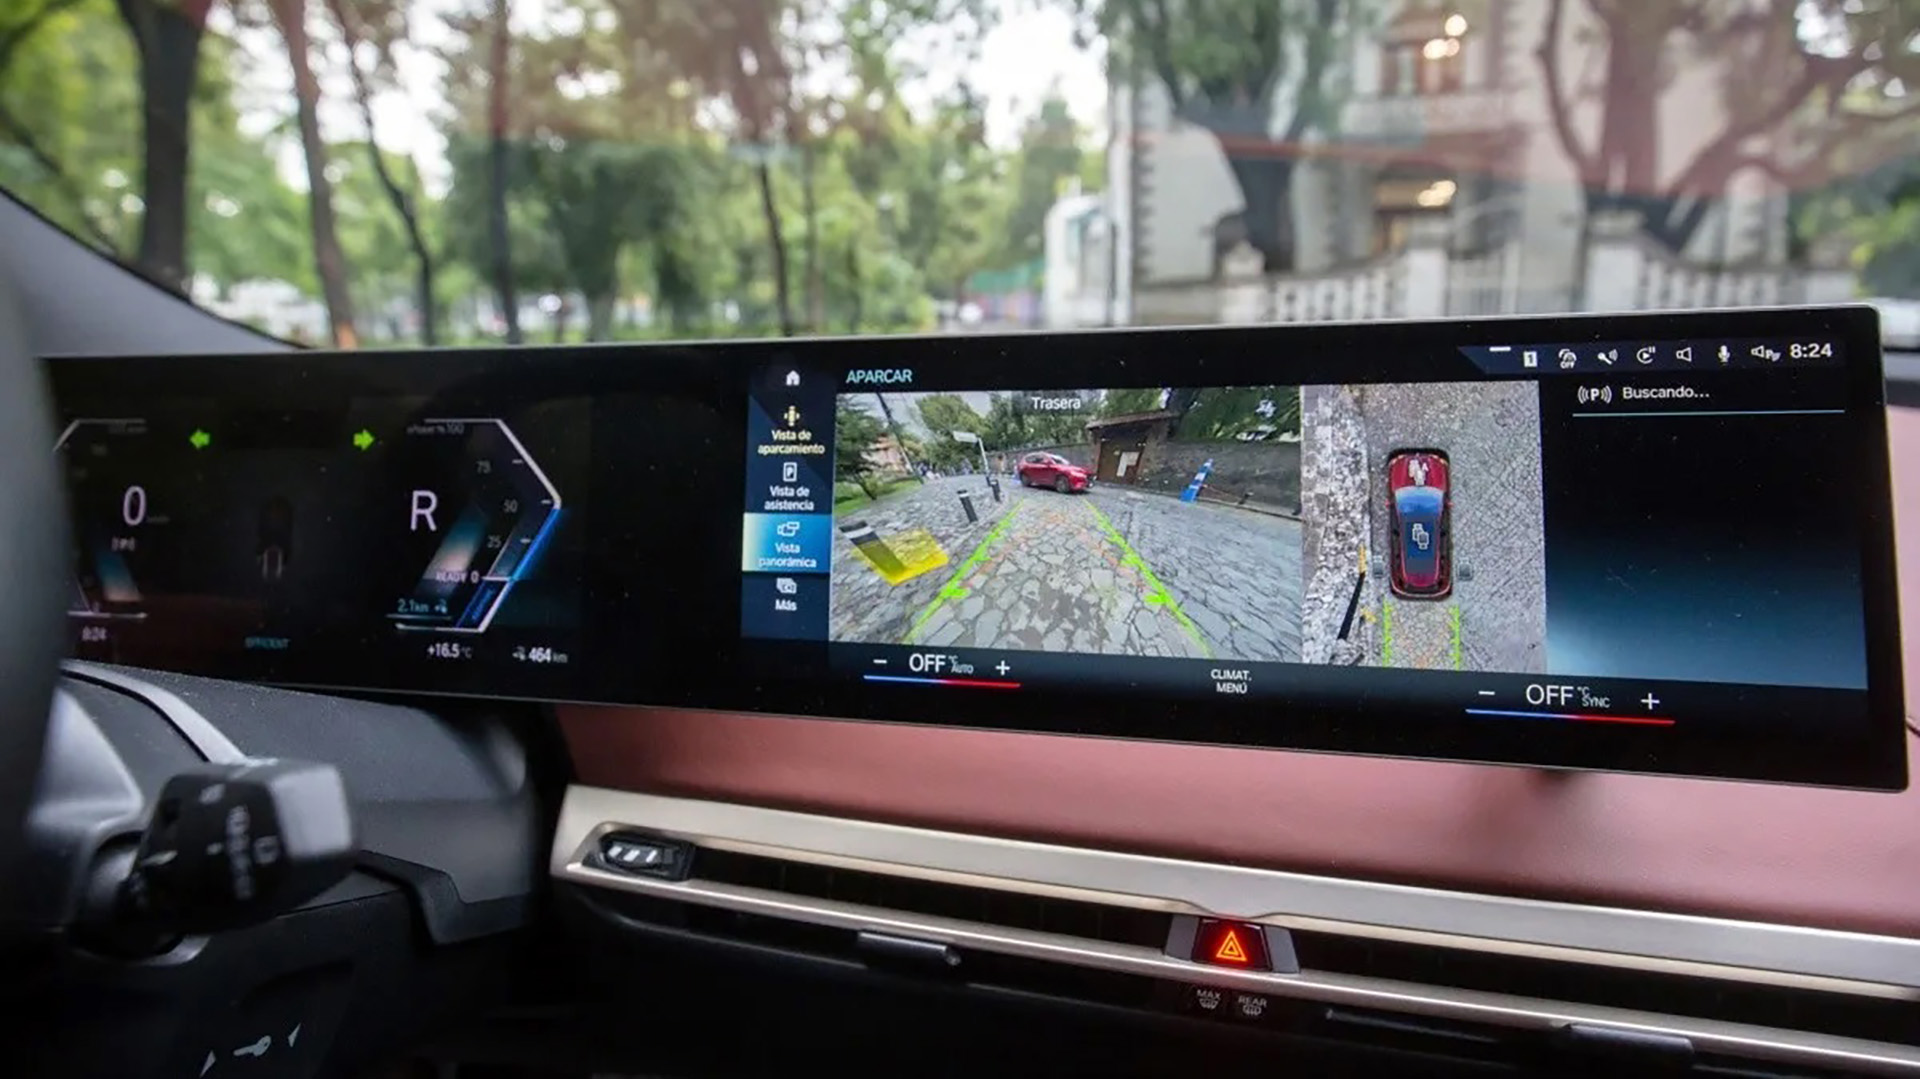 Las grandes pantallas en los autos modernos, permiten que las cámaras traseras tengan mucha mayor influencia en maniobras como el estacionamiento